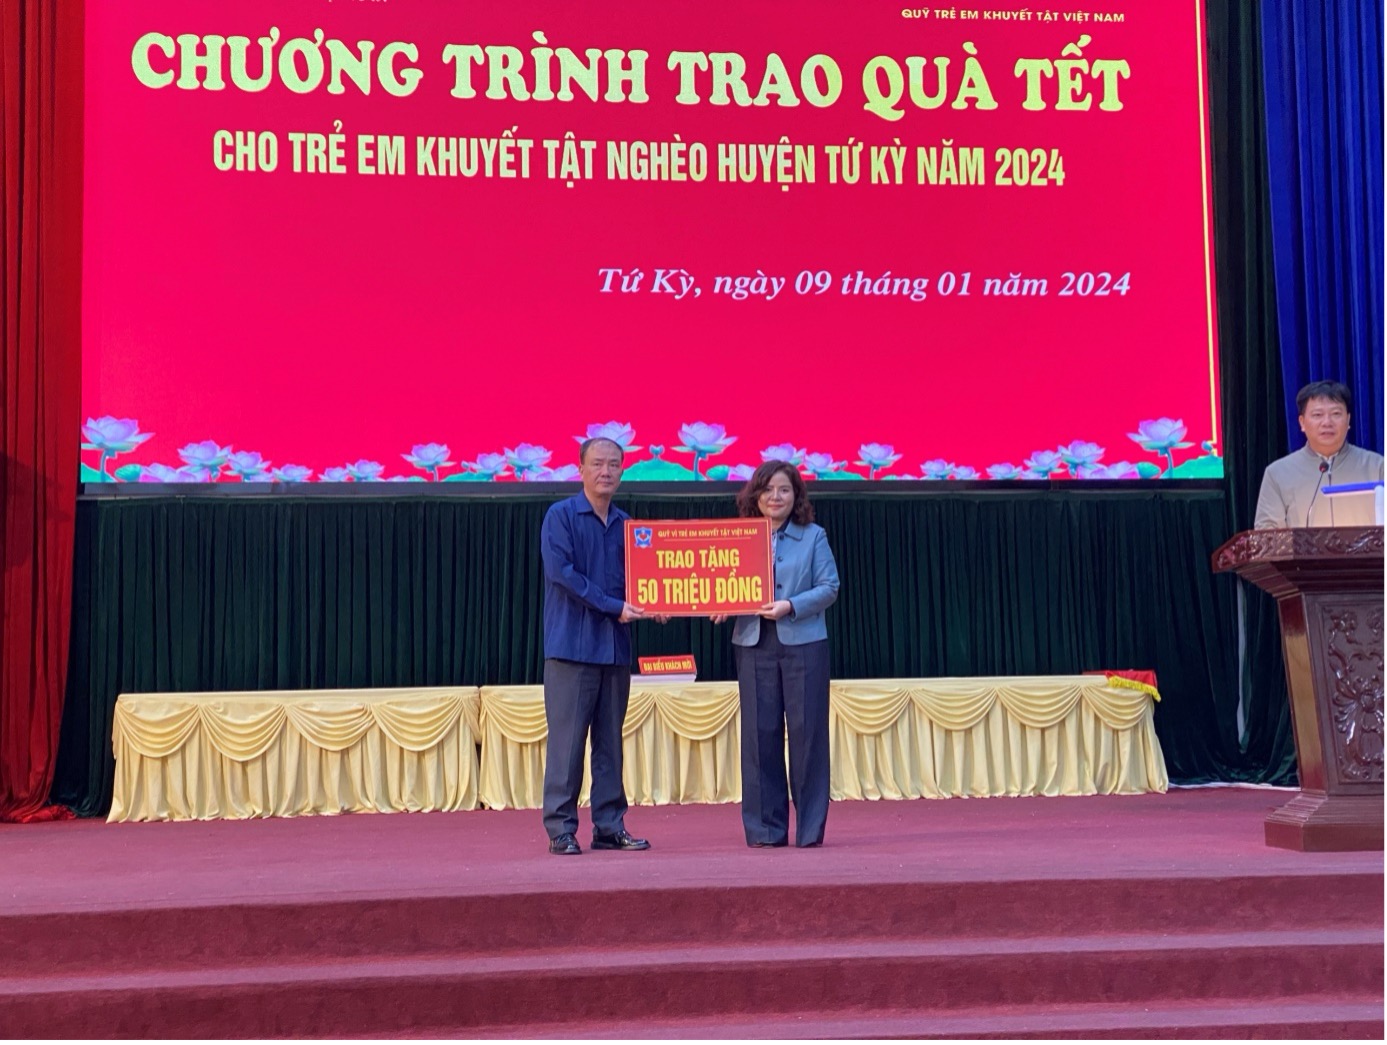 Bà Dương Thị Bích Diệp Chủ tịch HĐQL Quỹ VTEKTVN trao biển tài trợ cho Hội Chữ Thập Đỏ huyện Tứ Kỳ, tỉnh Hải Dương